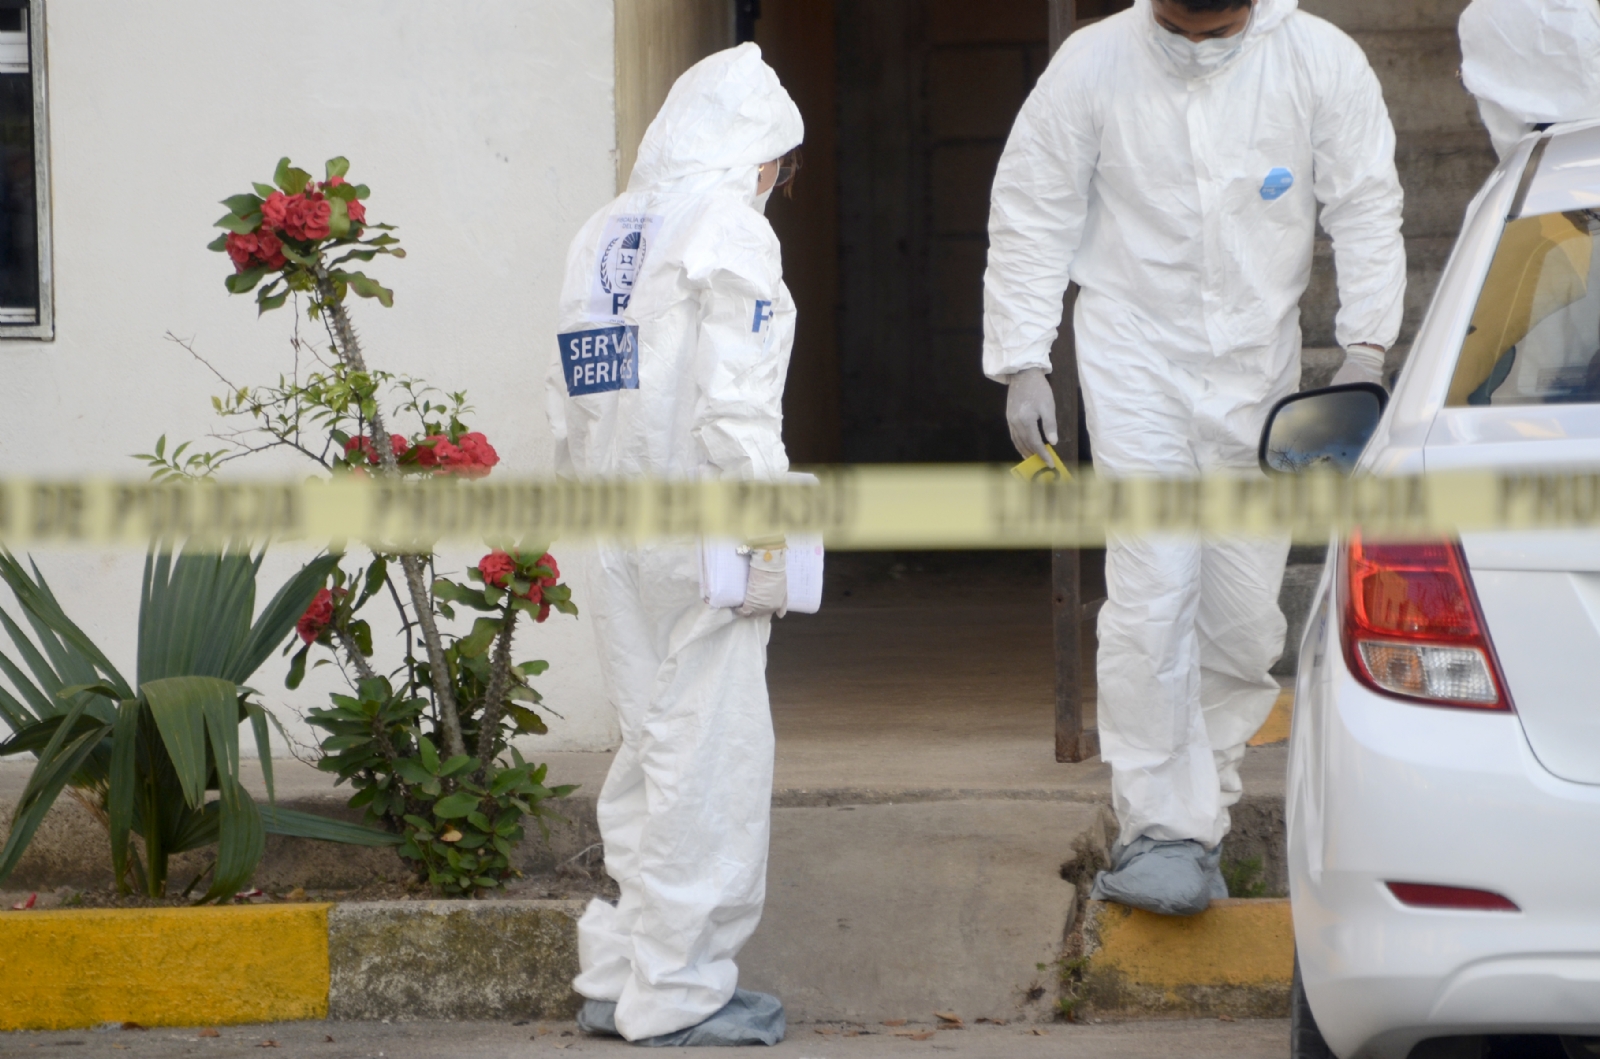 Quintana Roo registró un incremento en el número de homicidios y otros delitos de alto impacto en lo que va del 2022, según el reporte del SESNSP